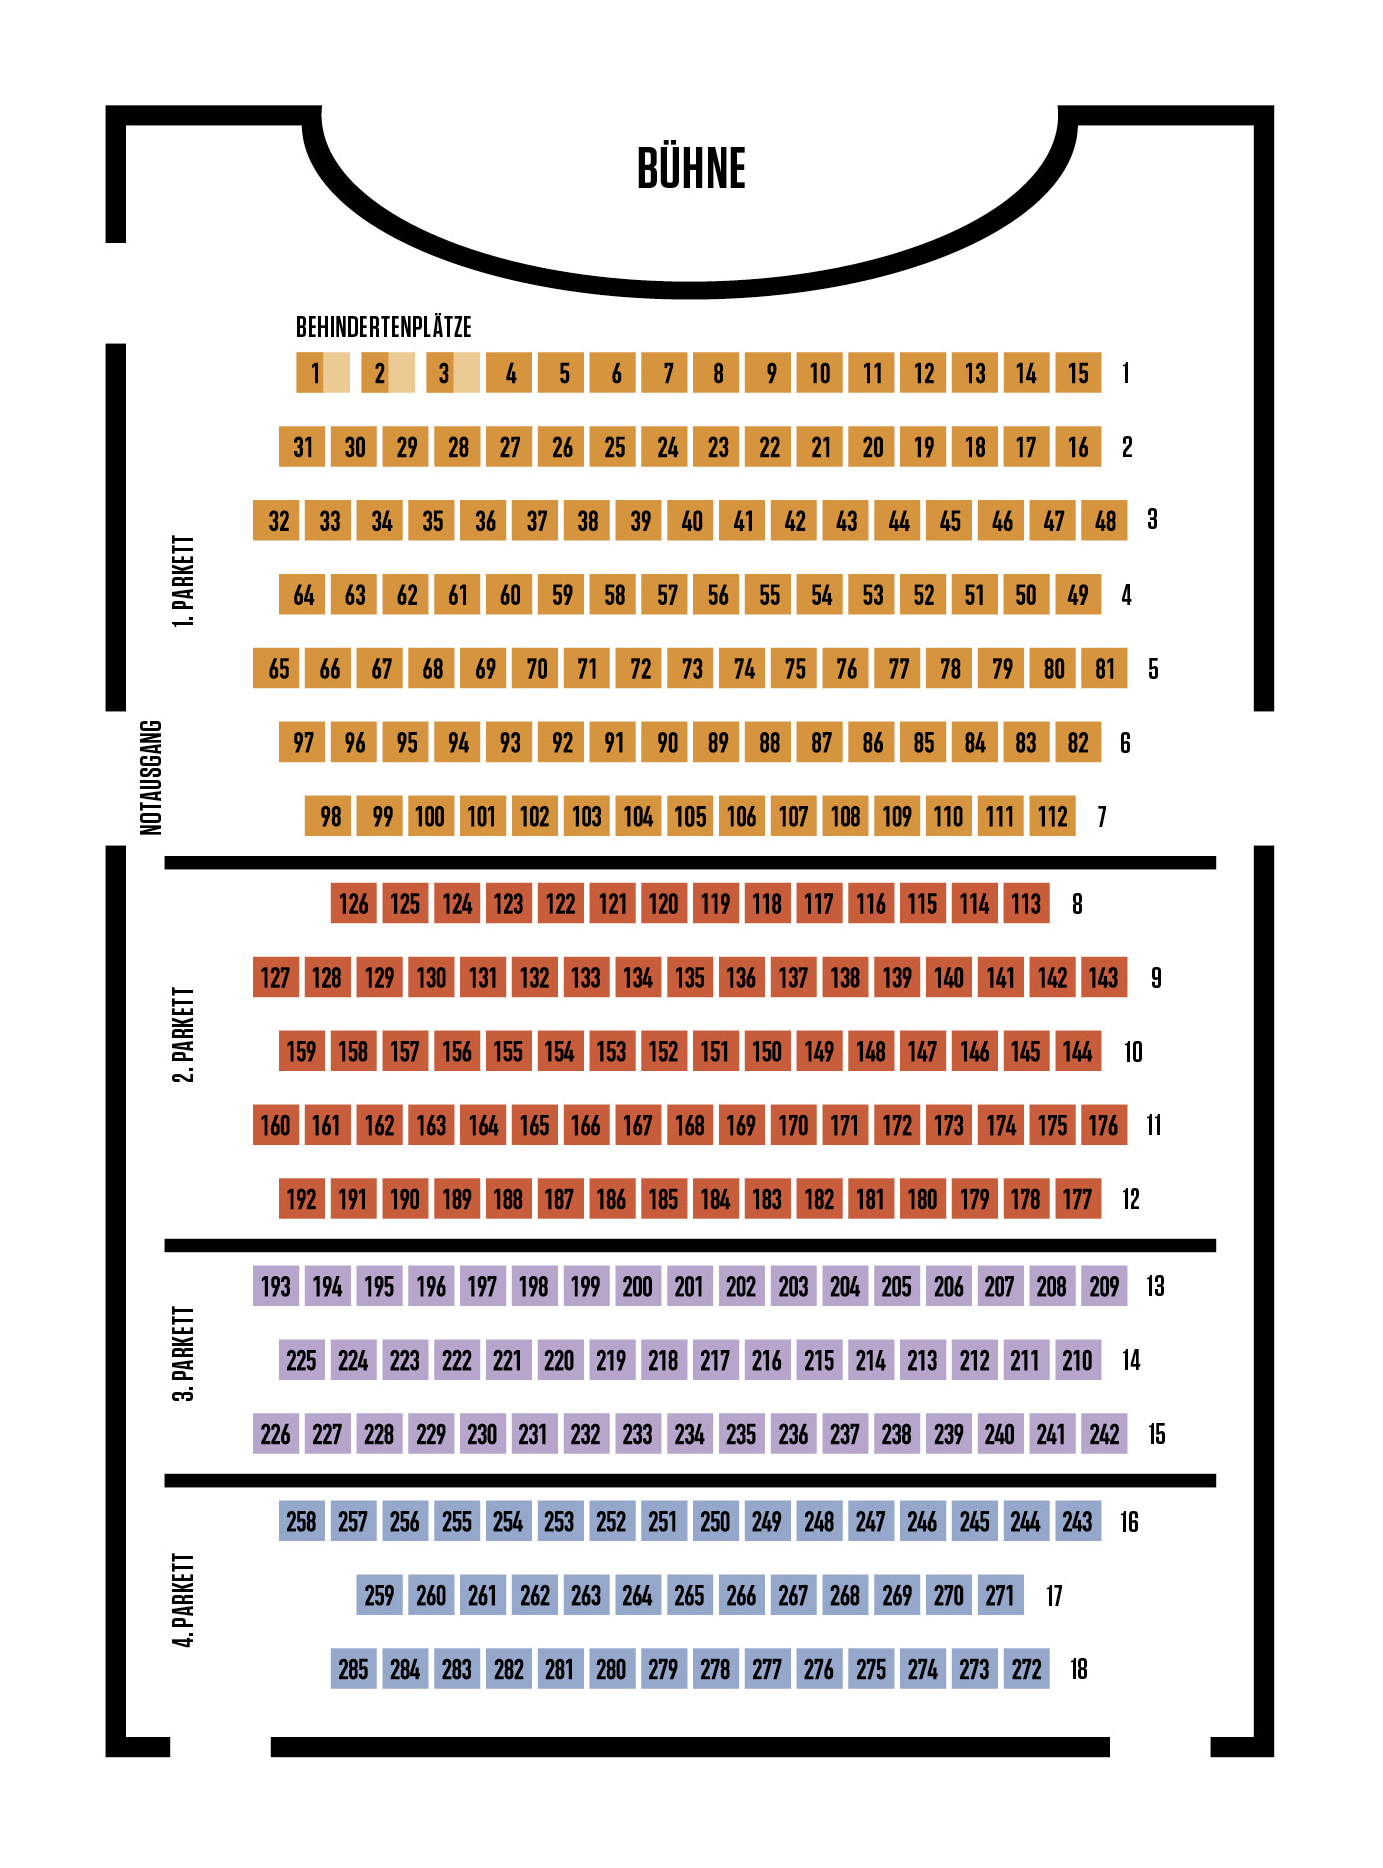 Hessisches Staatstheater Wiesbaden Spielplan